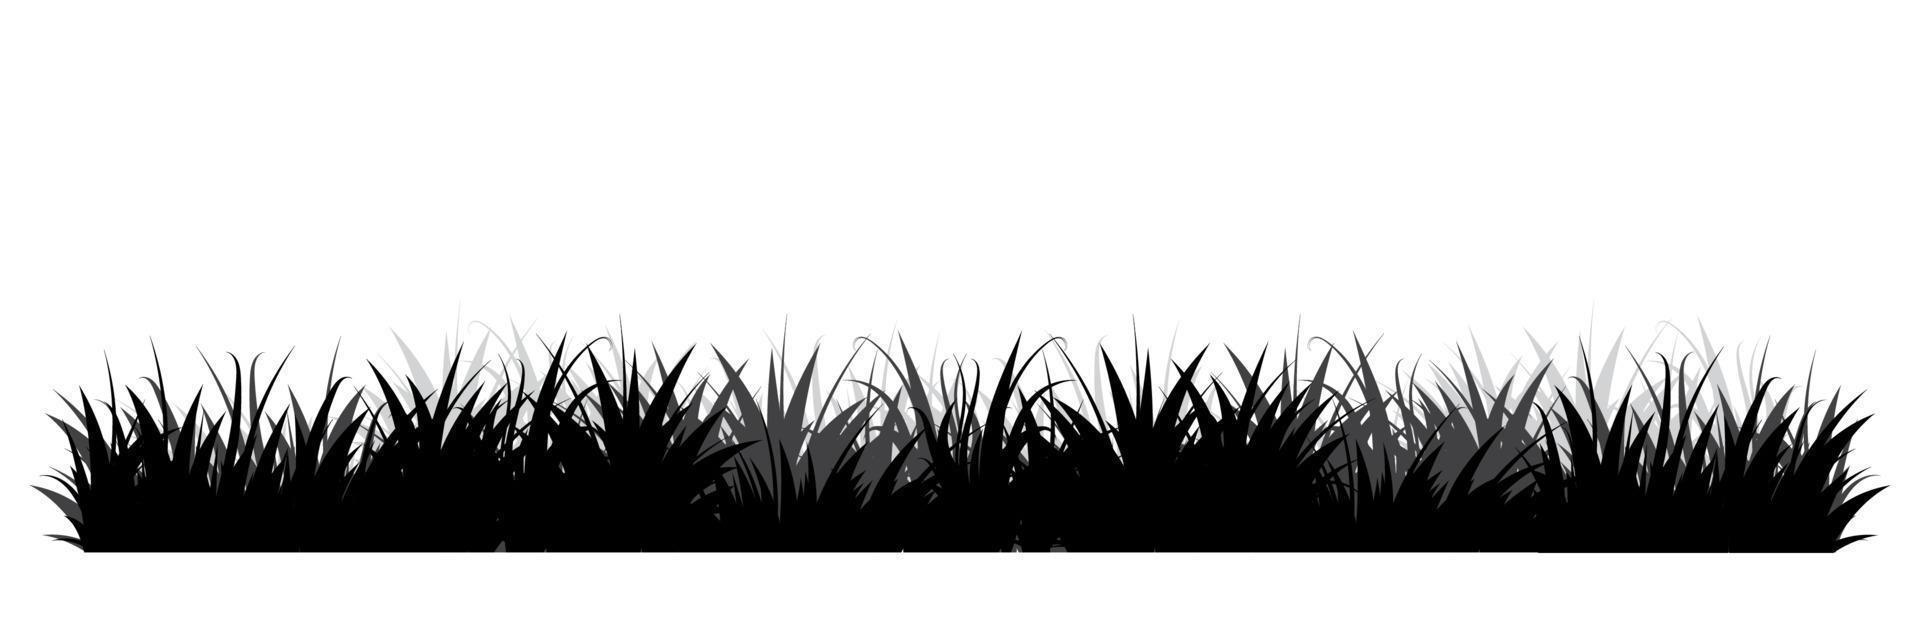 siluetas negras de hierba. fondo floral. hierba salvaje silueta de bordes de hierba. ilustración vectorial vector